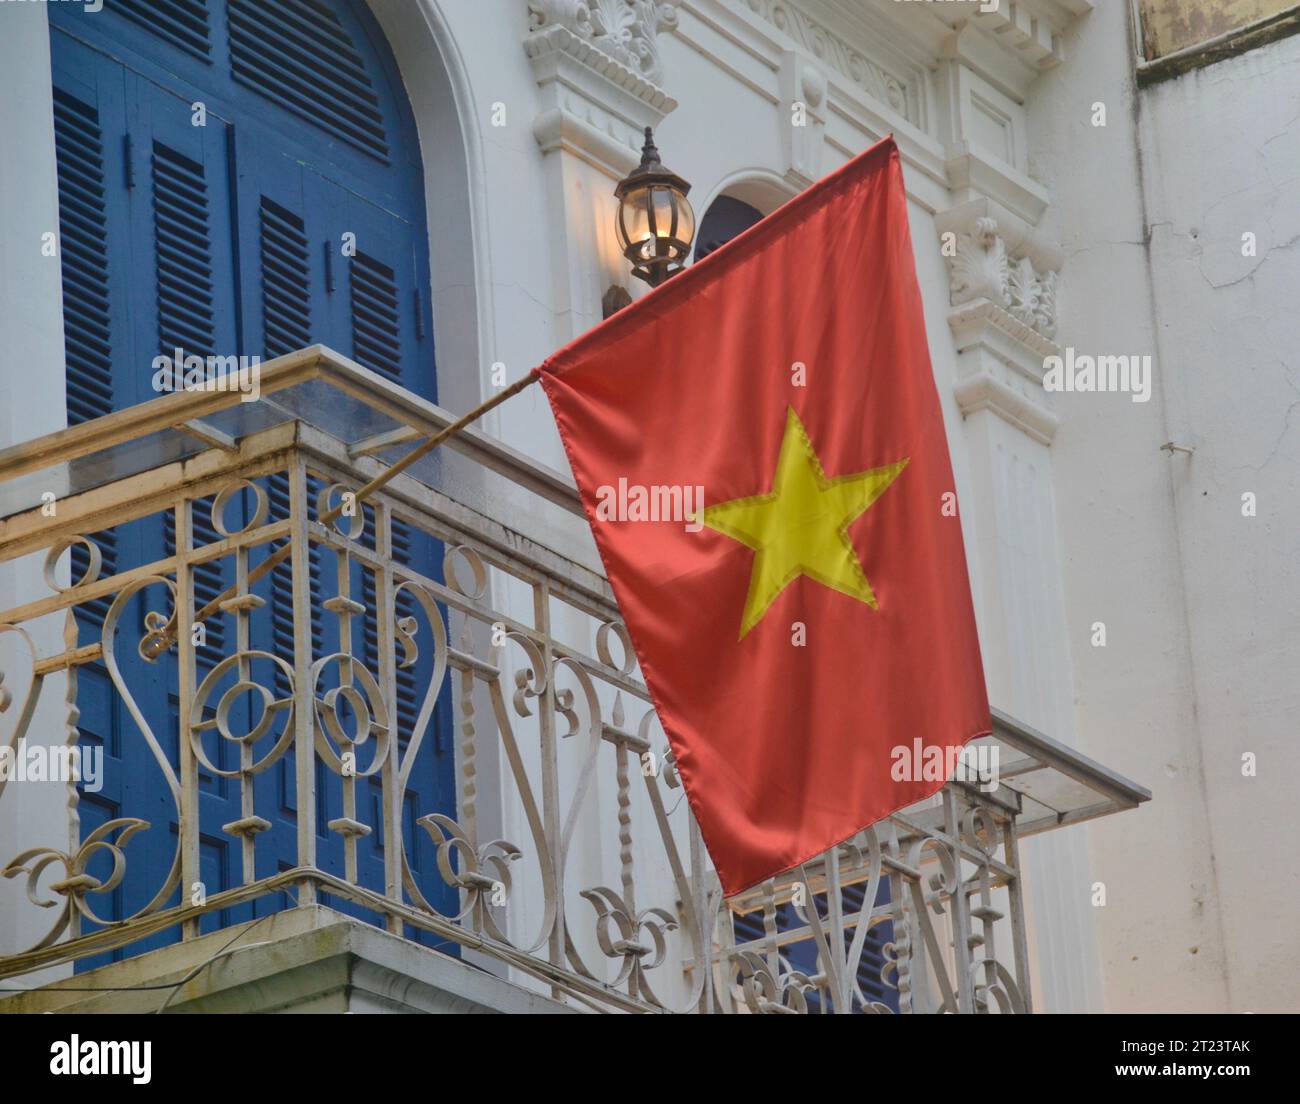 Bandiera nazionale rossa d'oro del Vietnam che sventola con orgoglio dal balcone di una casa nello stile coloniale francese del quartiere vecchio di Hanoi Foto Stock